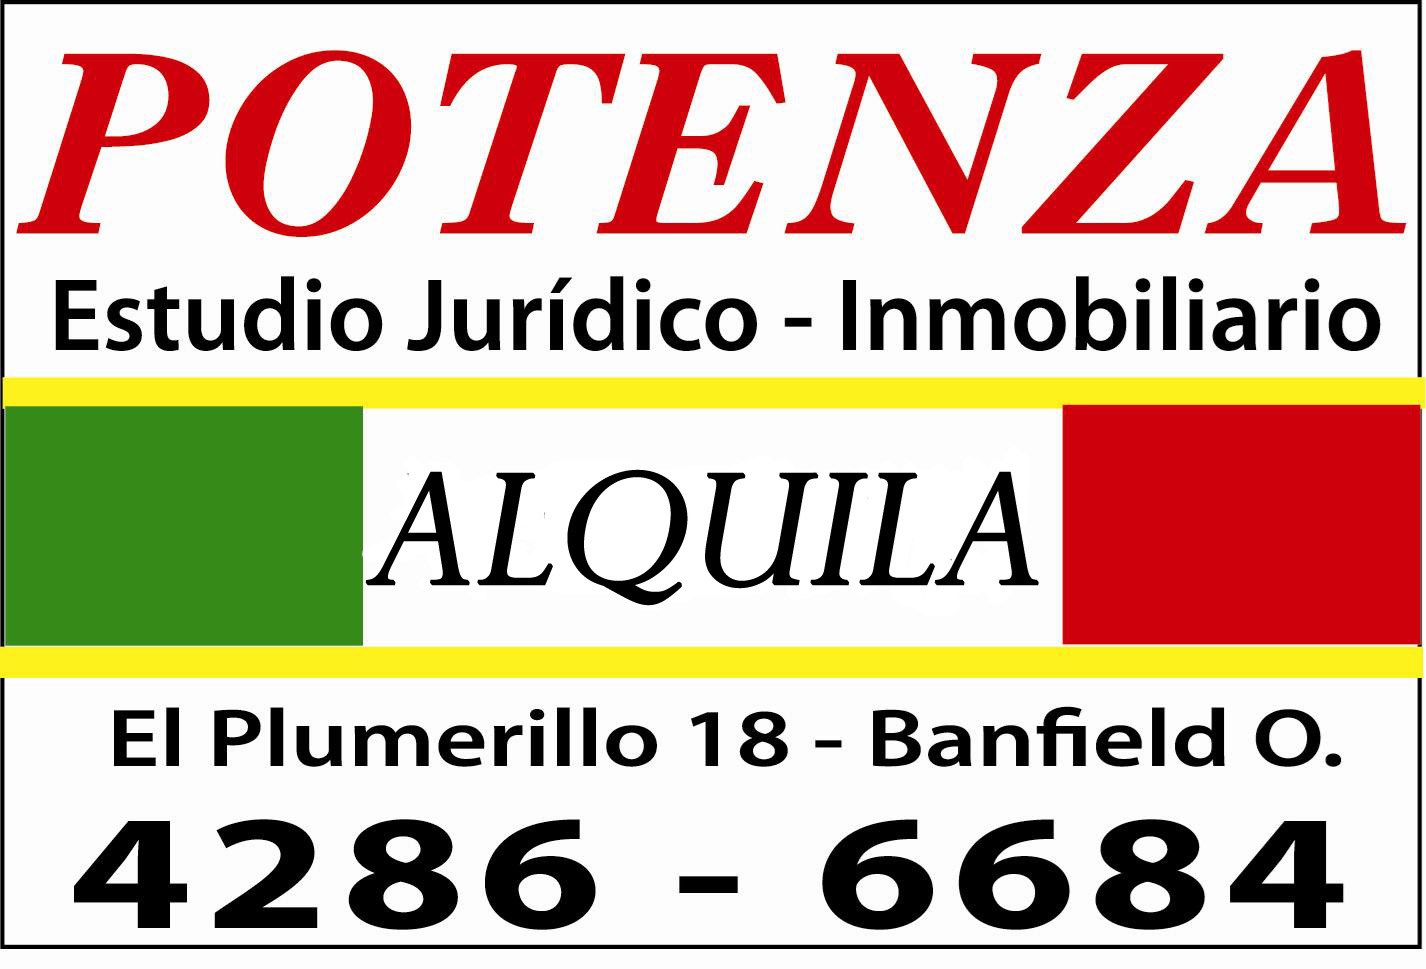 #4571604 | Temporary Rental | Apartment | Santa Clara Del Mar (Potenza Estudio Juridico Inmobiliario)